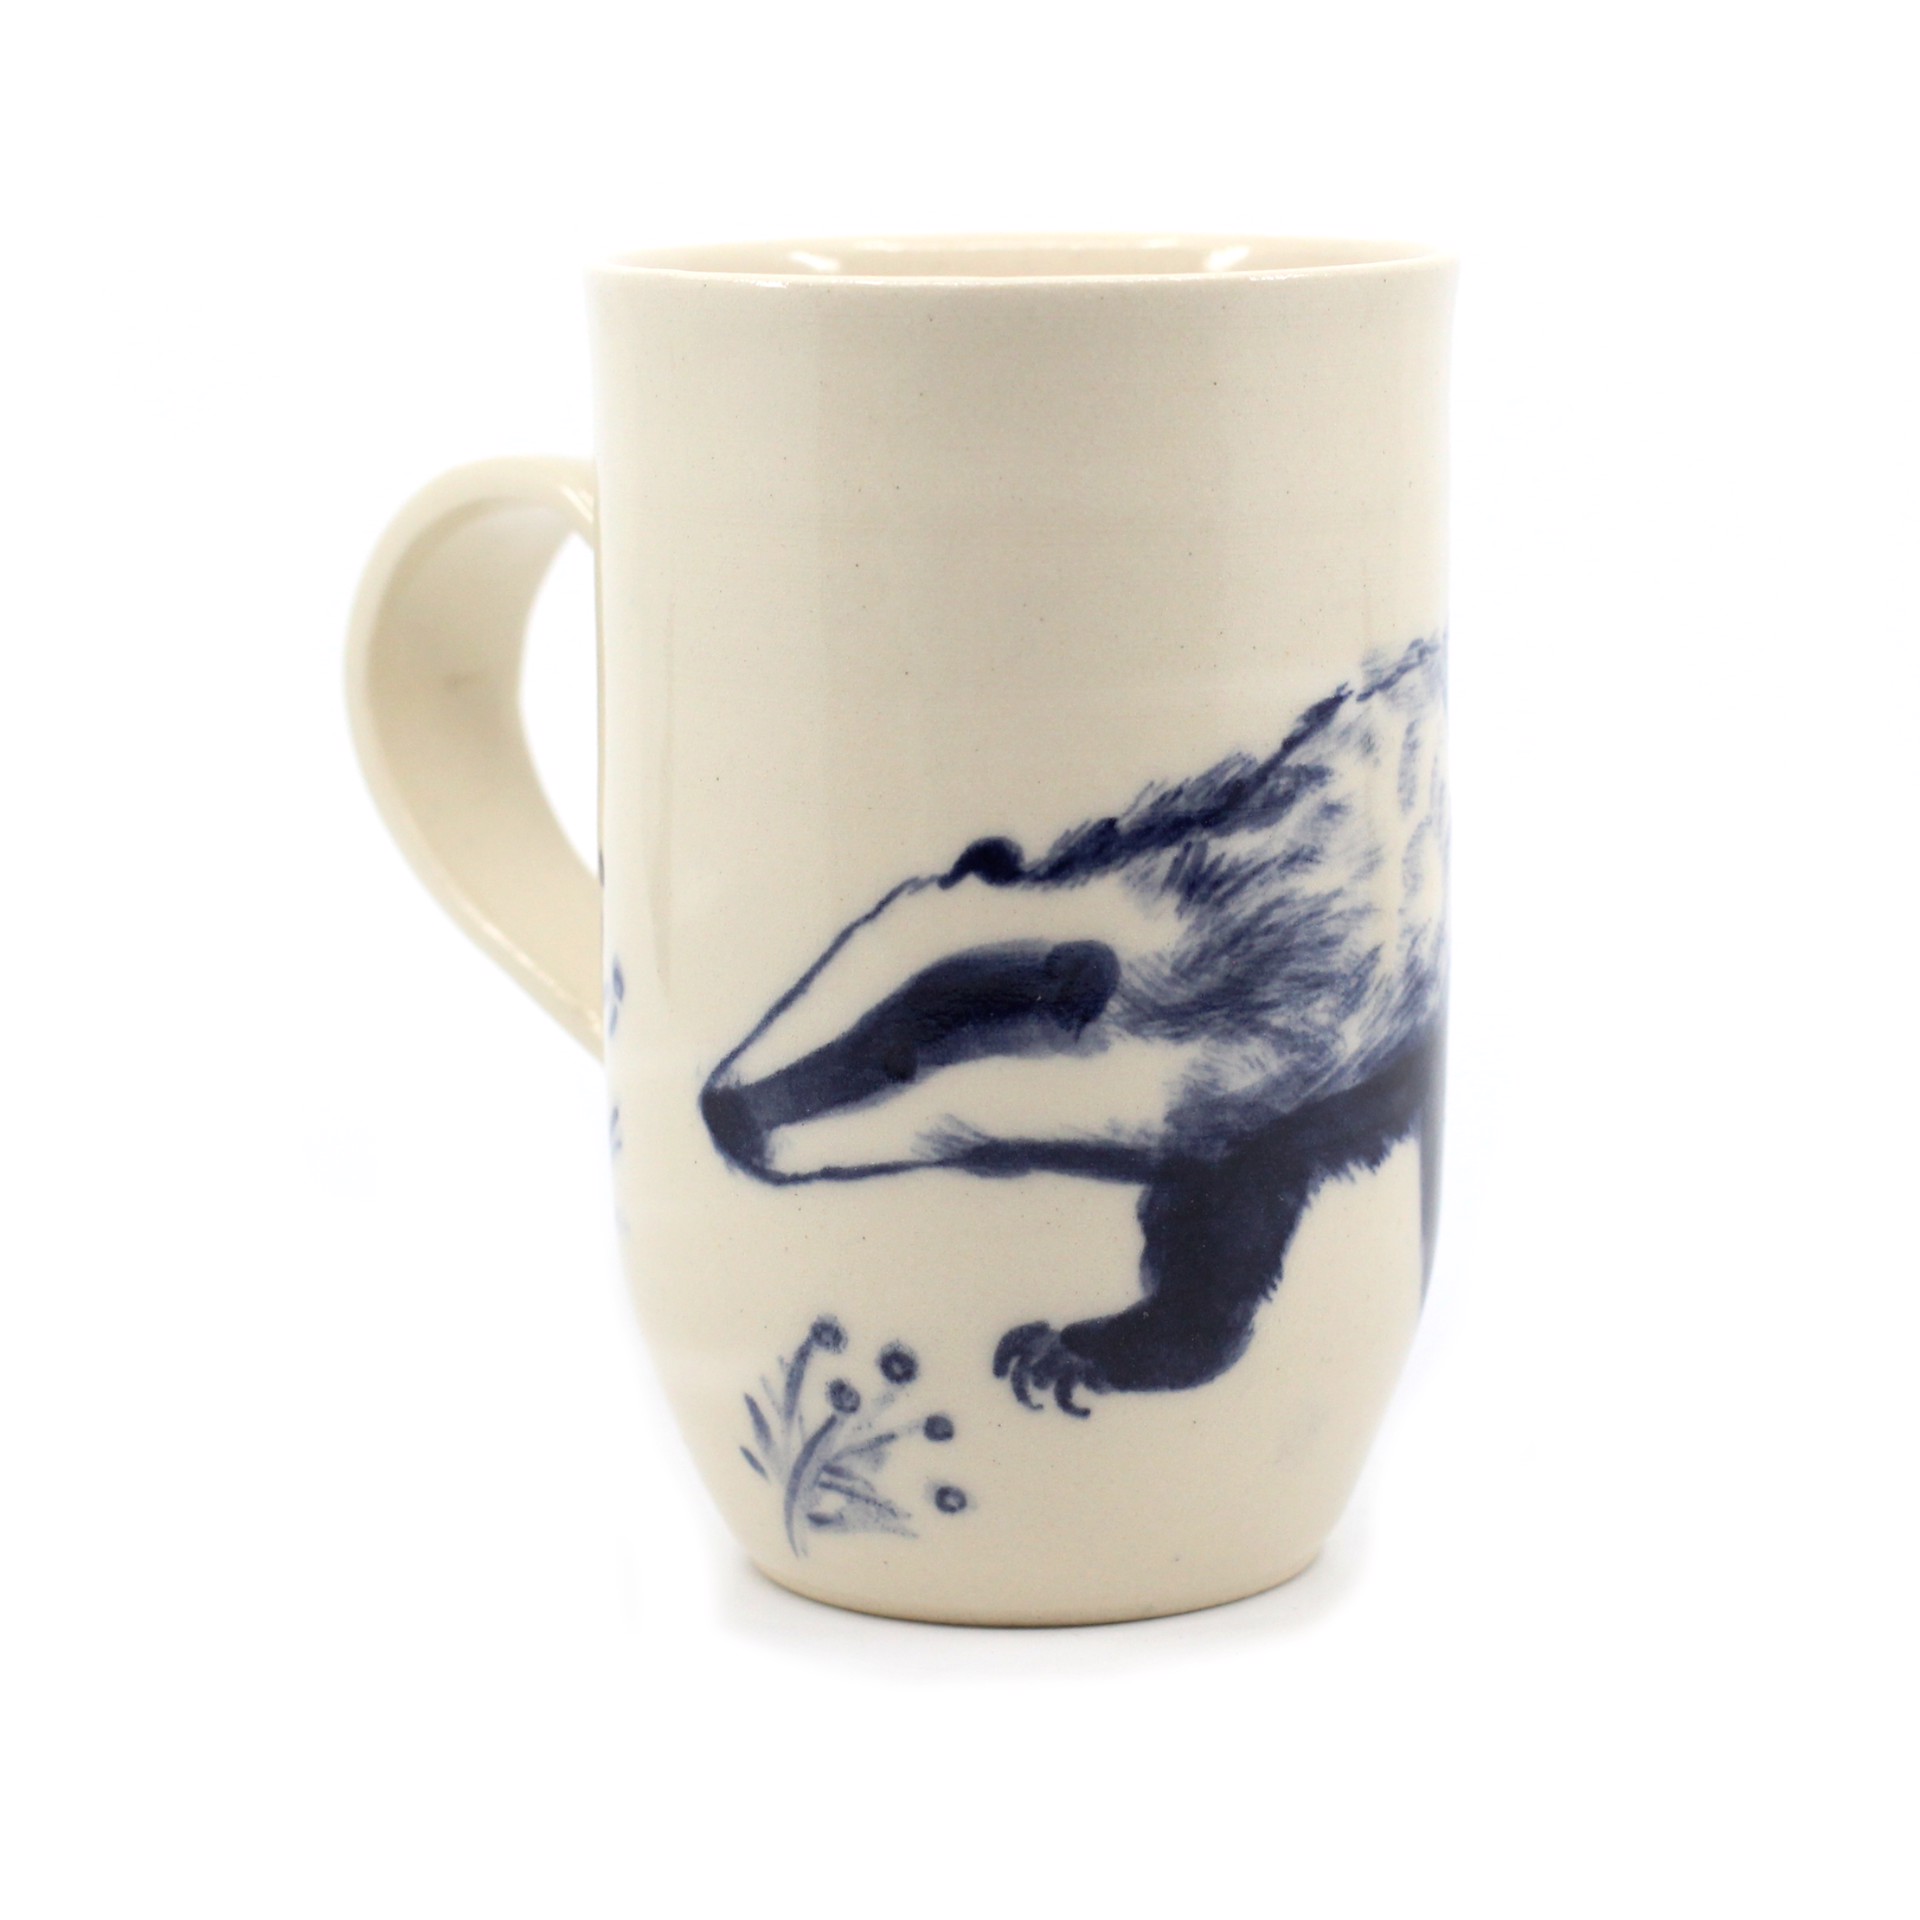 Badger Mug by Kat Kinnick